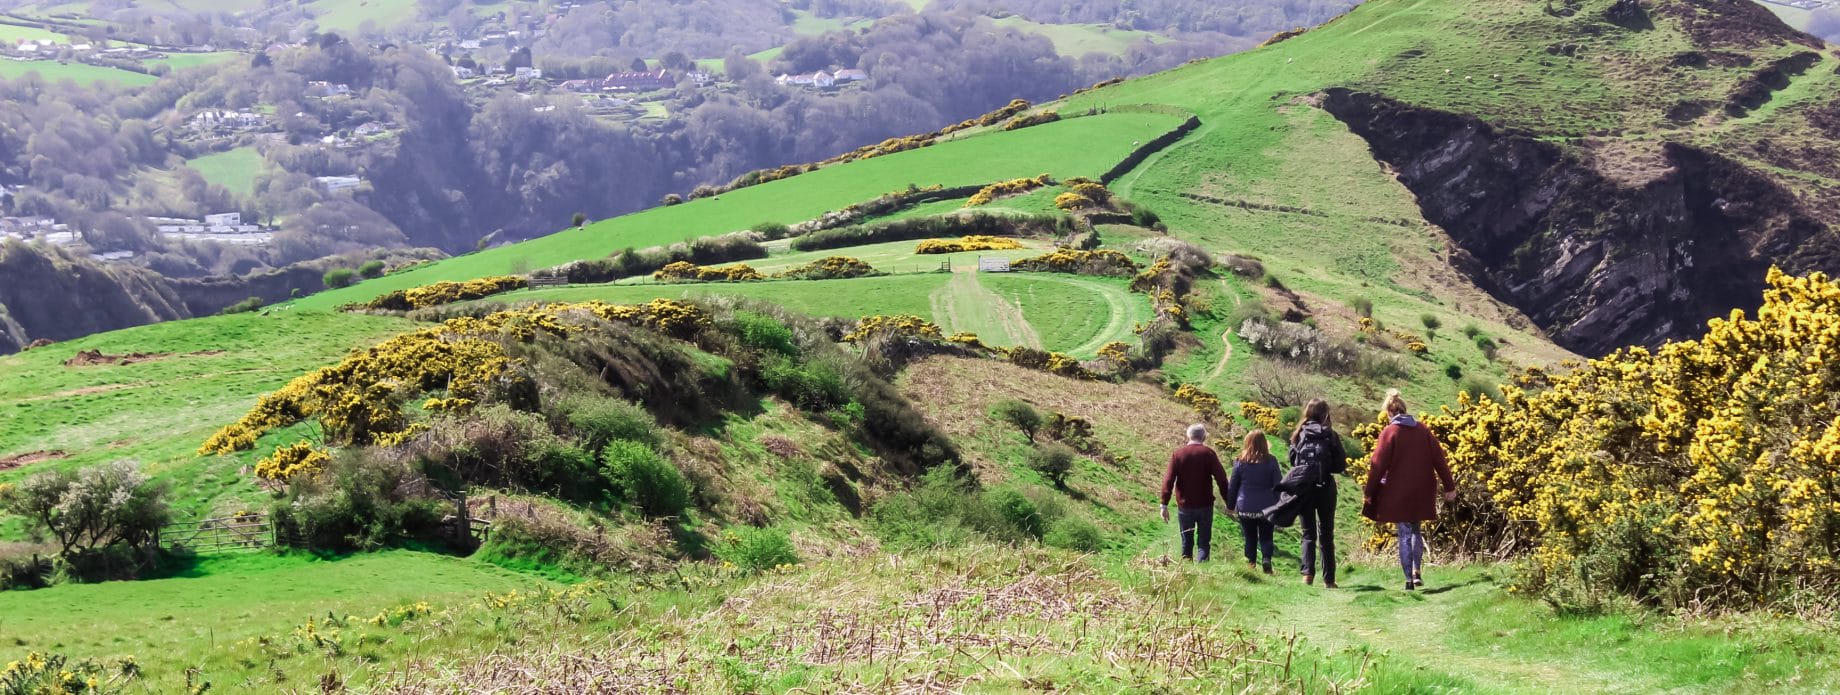 North Devon coastal walks near Middle Dean Farm